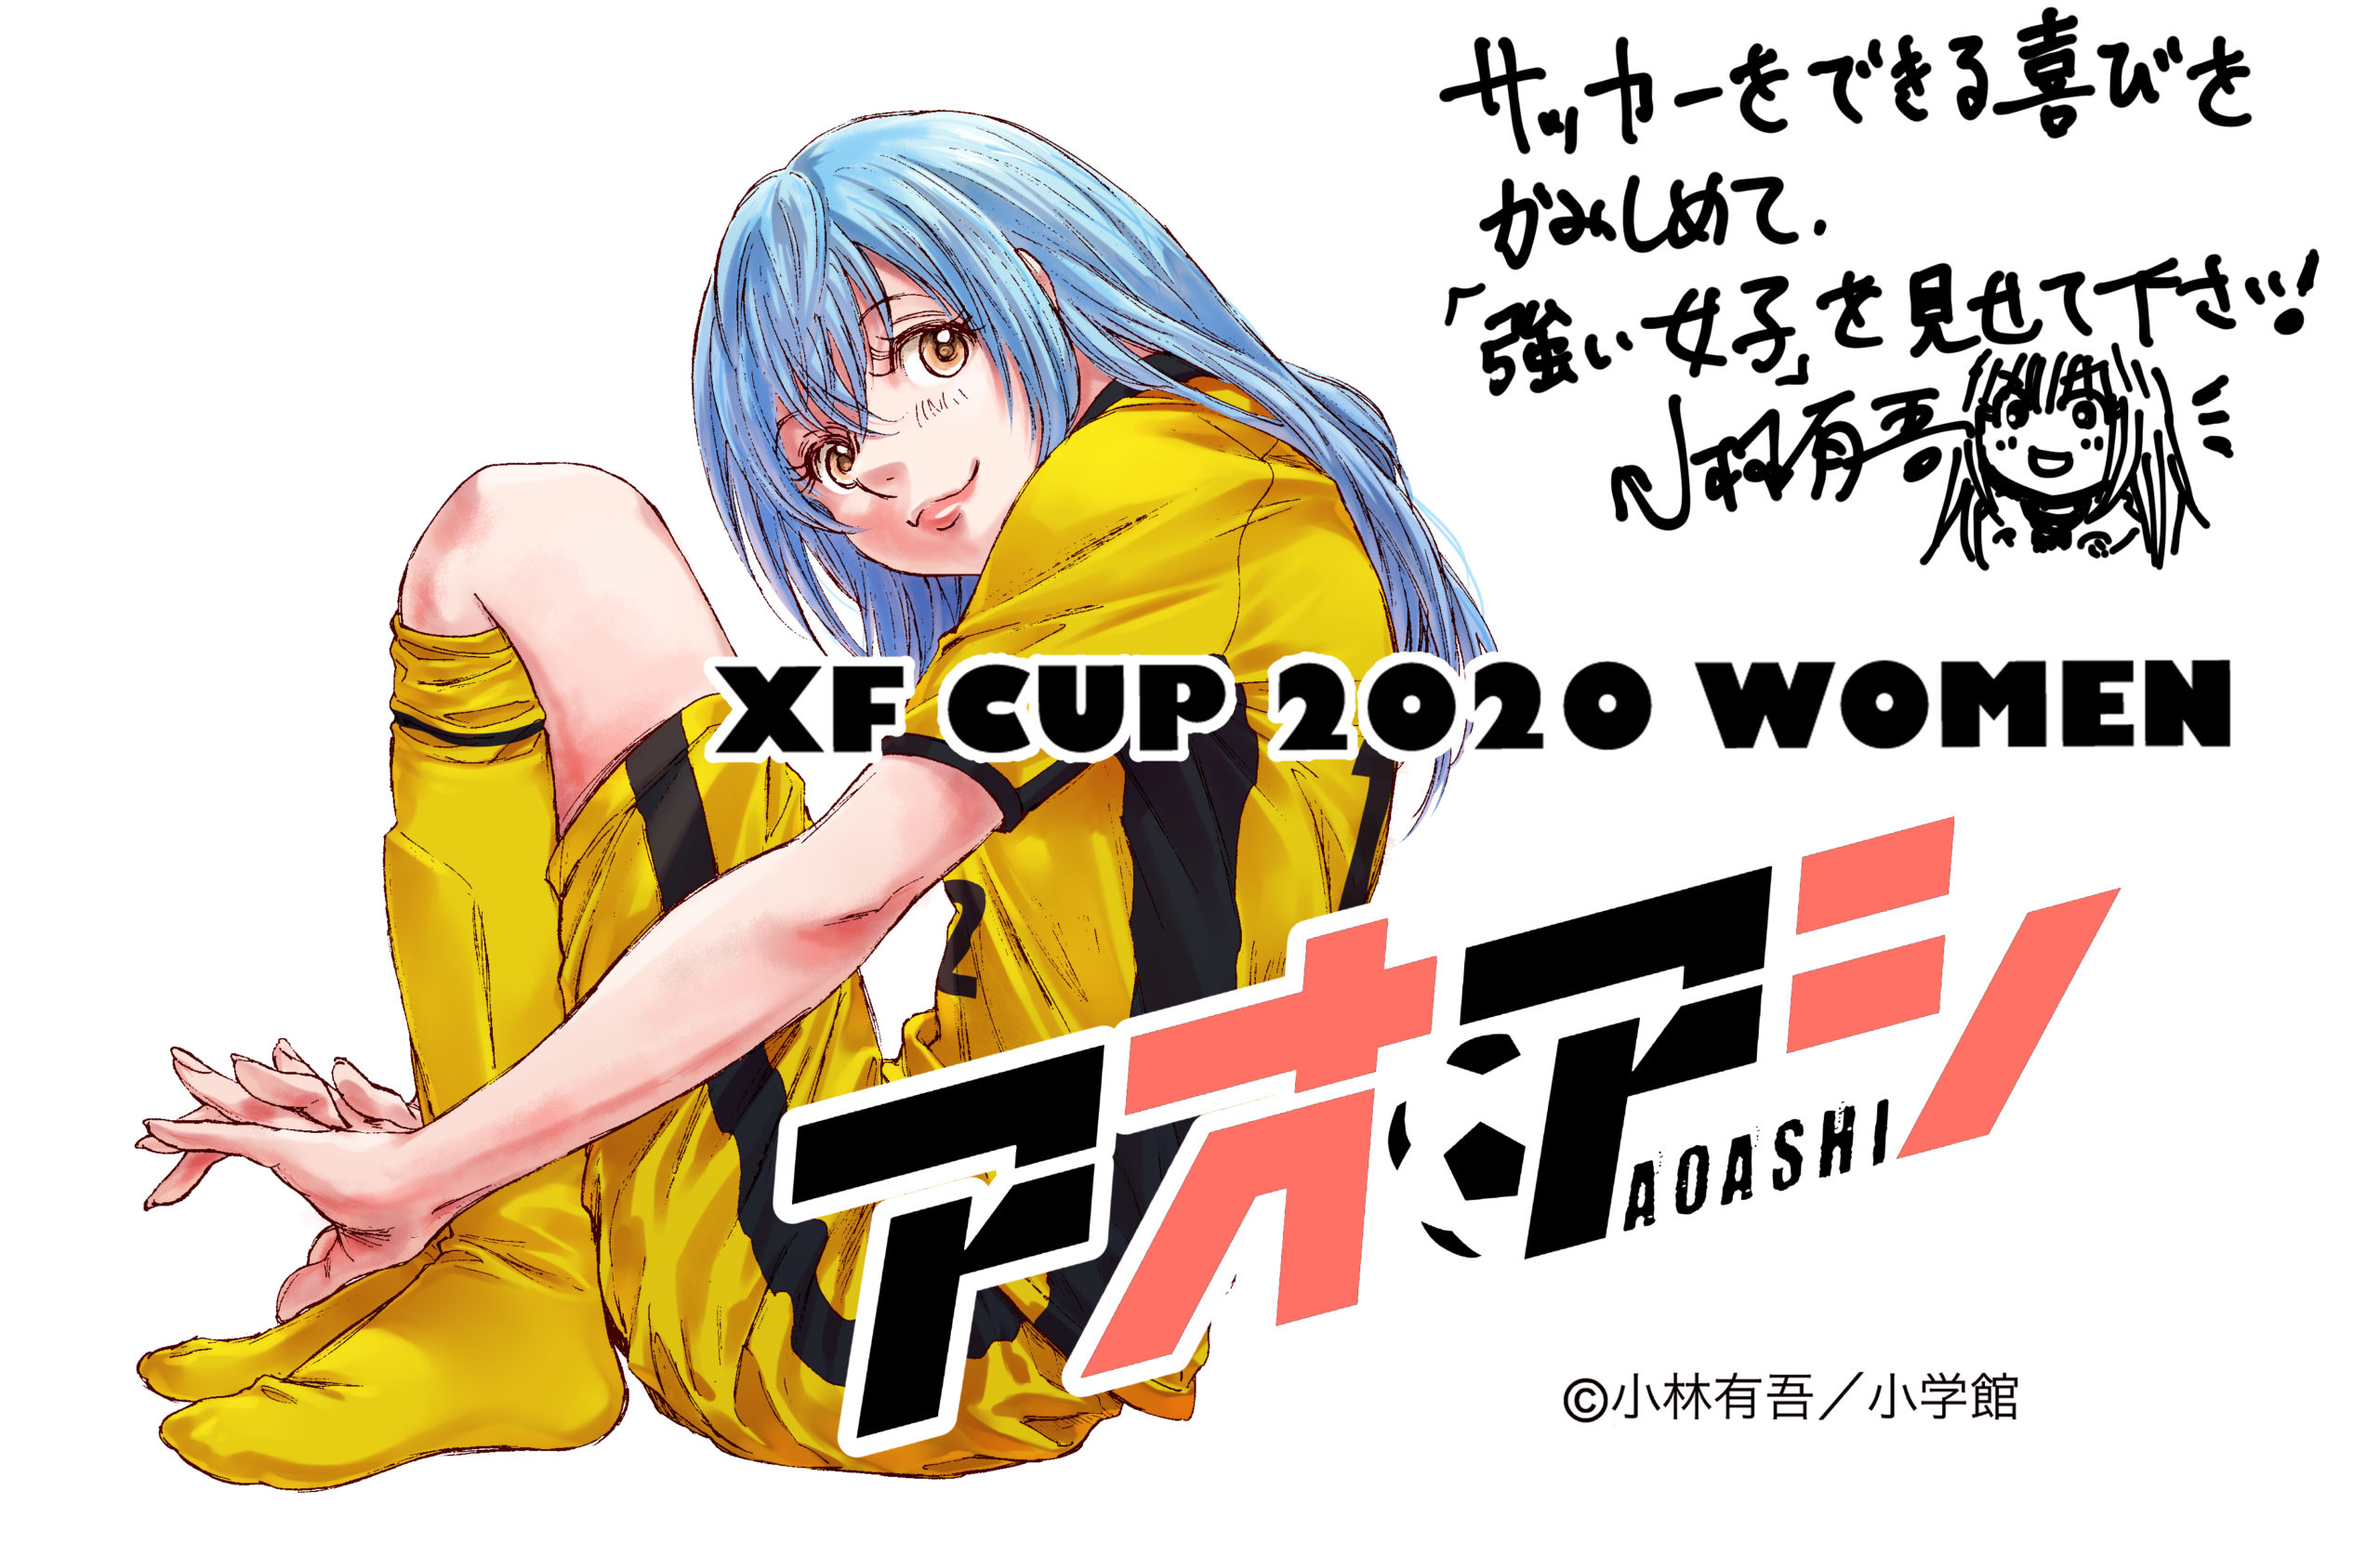 クラウドファンディング支援者様からの応援メッセージ Xf Cup 日本クラブユース 女子サッカー大会 U 18